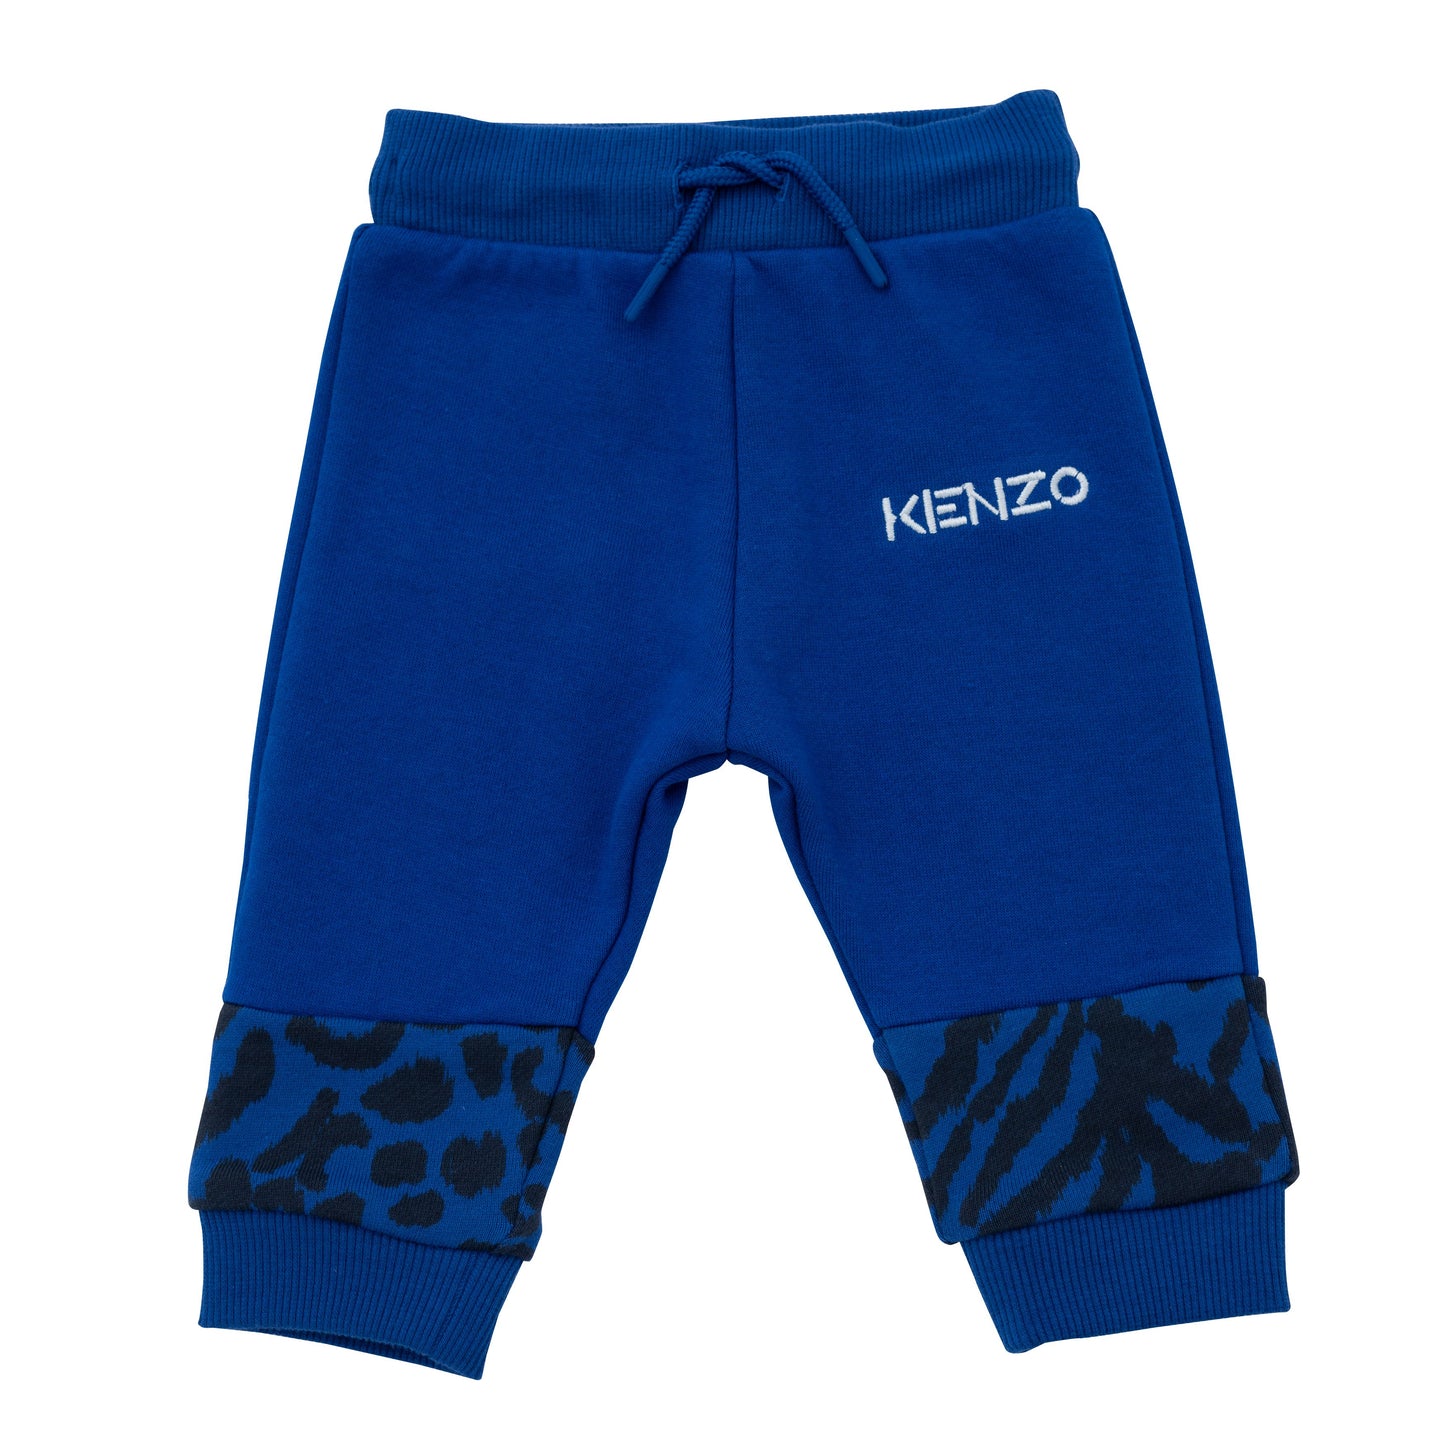 Kenzo Toddler Boys Tiger Sweat Suit